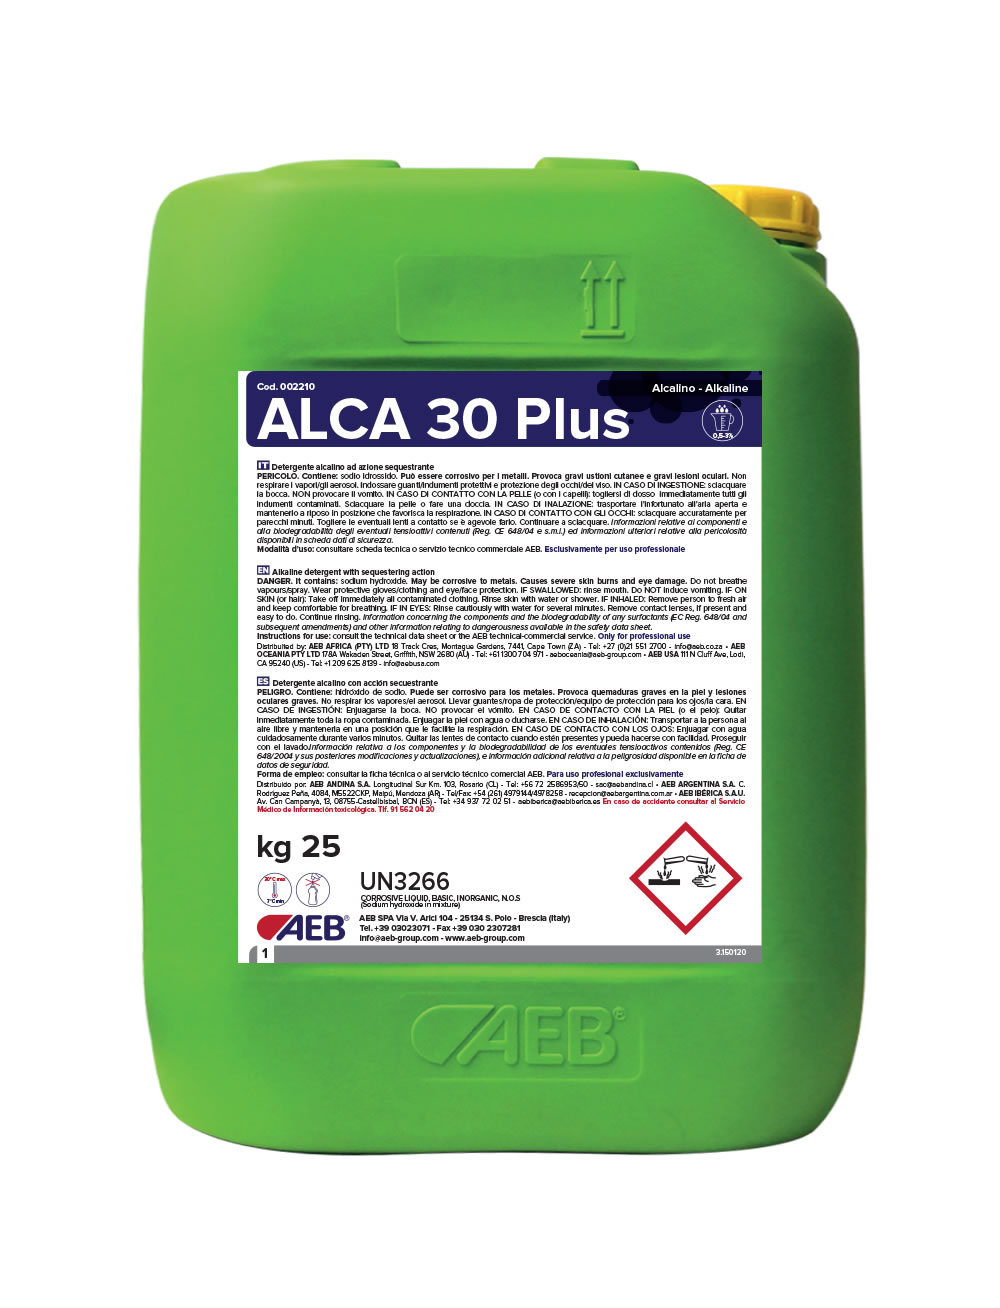 ALCA_30_PLUS_120620 - Prodotti Alcalini Detergenza Industria Alimentare - Vema SUD